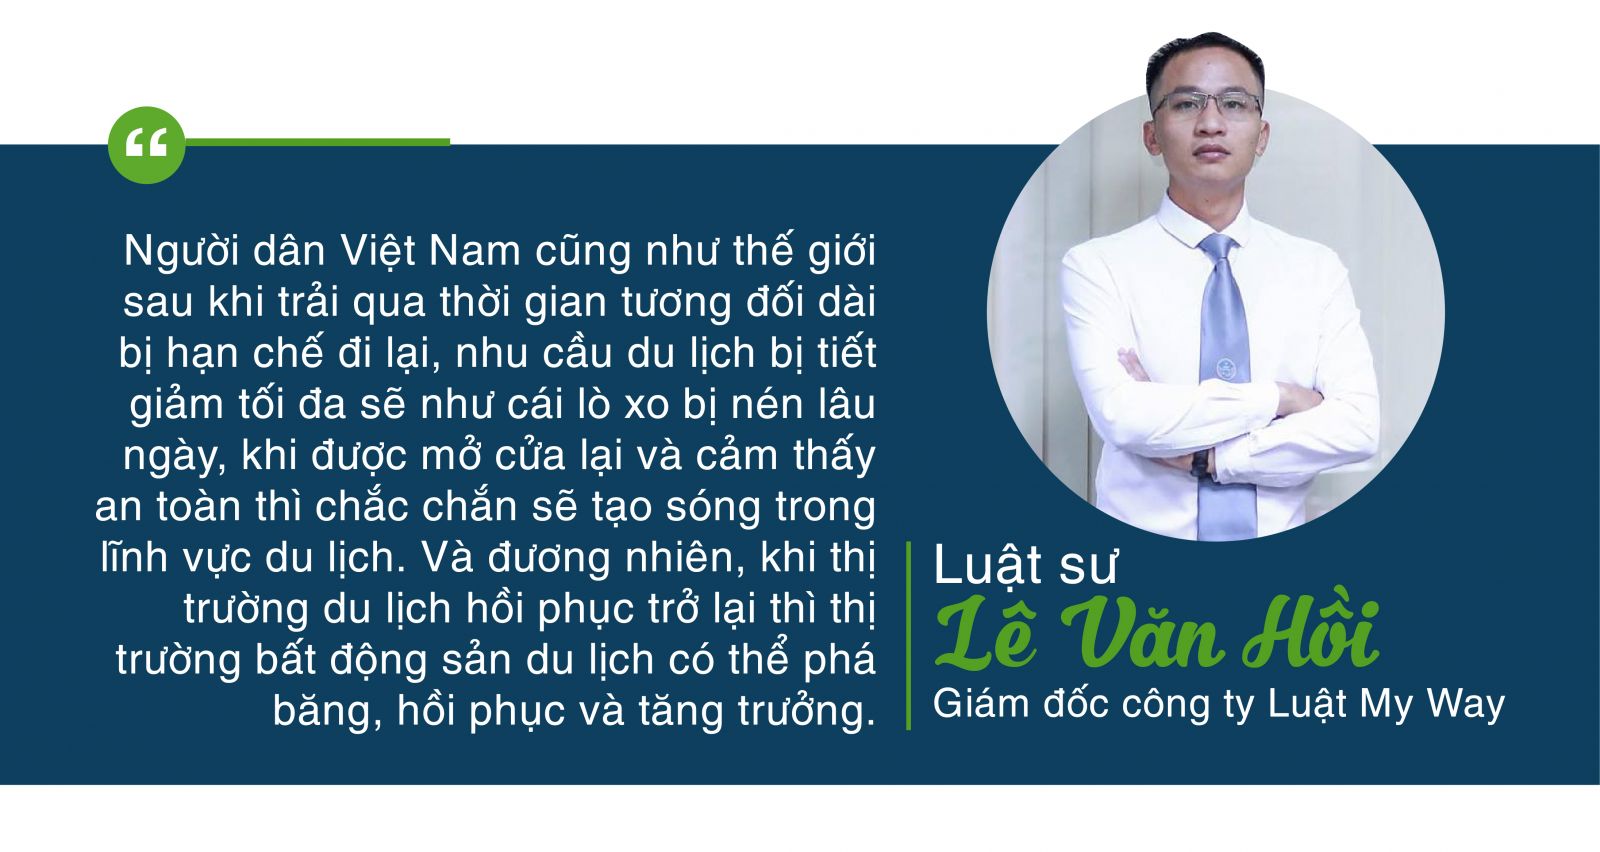 Luật sư Lê Văn Hồi 